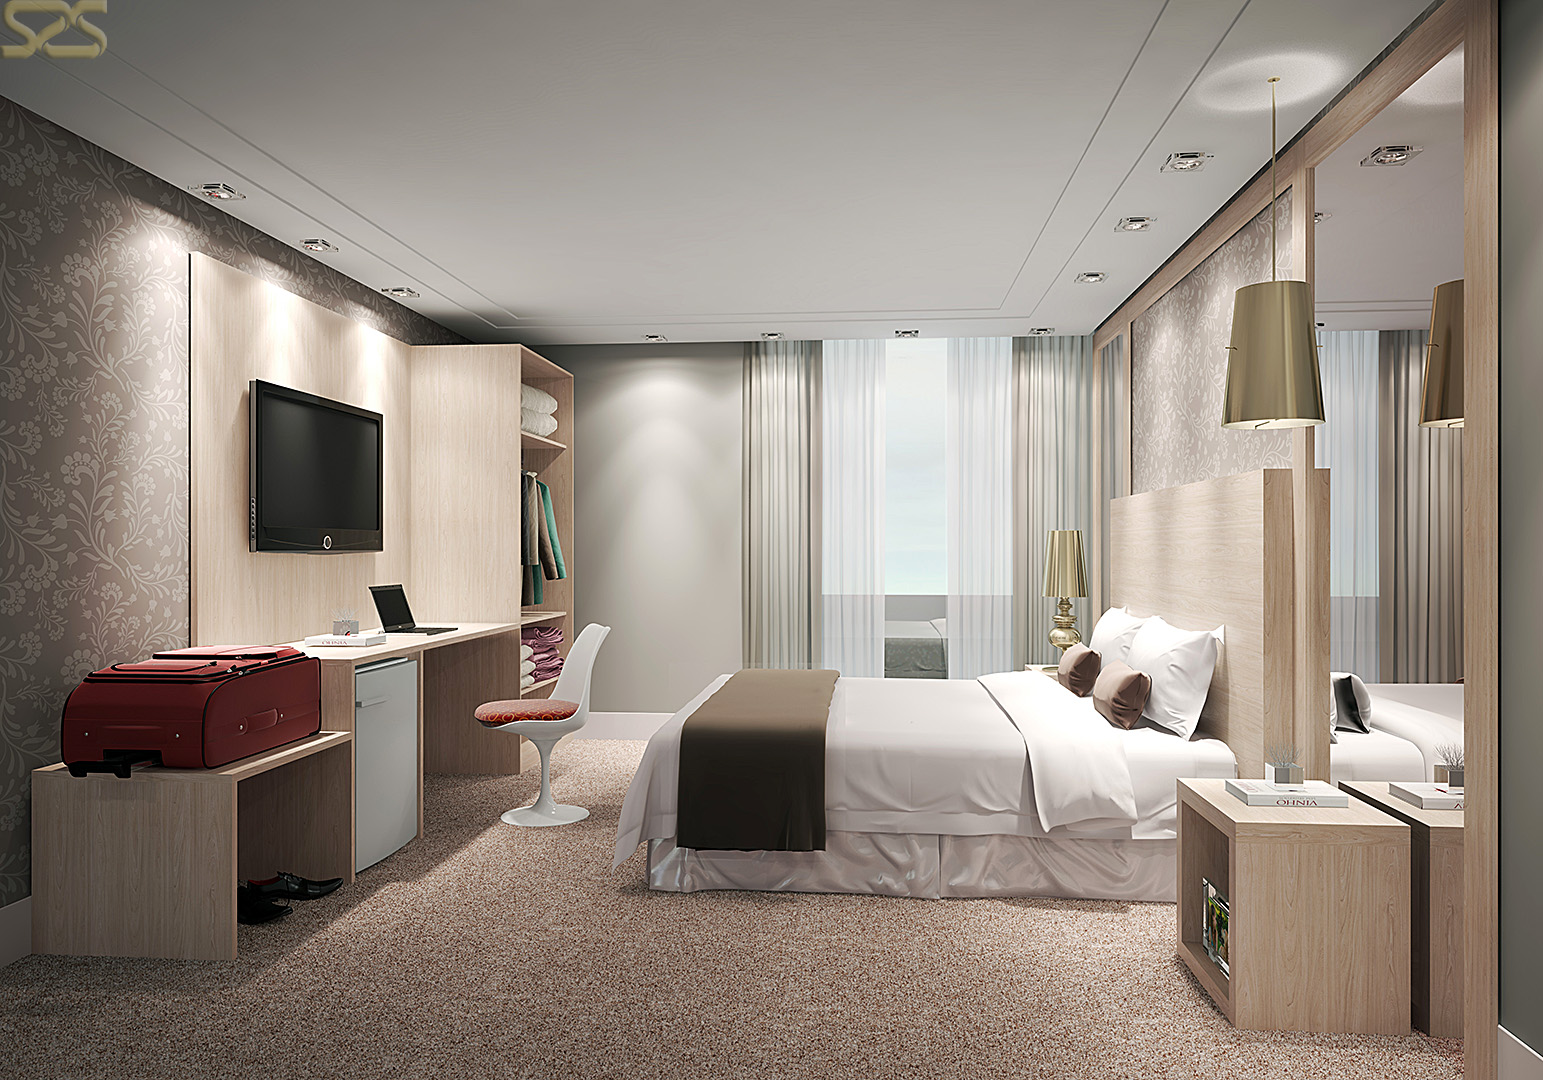 Apartamento de Hotel com móveis da KNR em imagem produzida pelo Studio 25